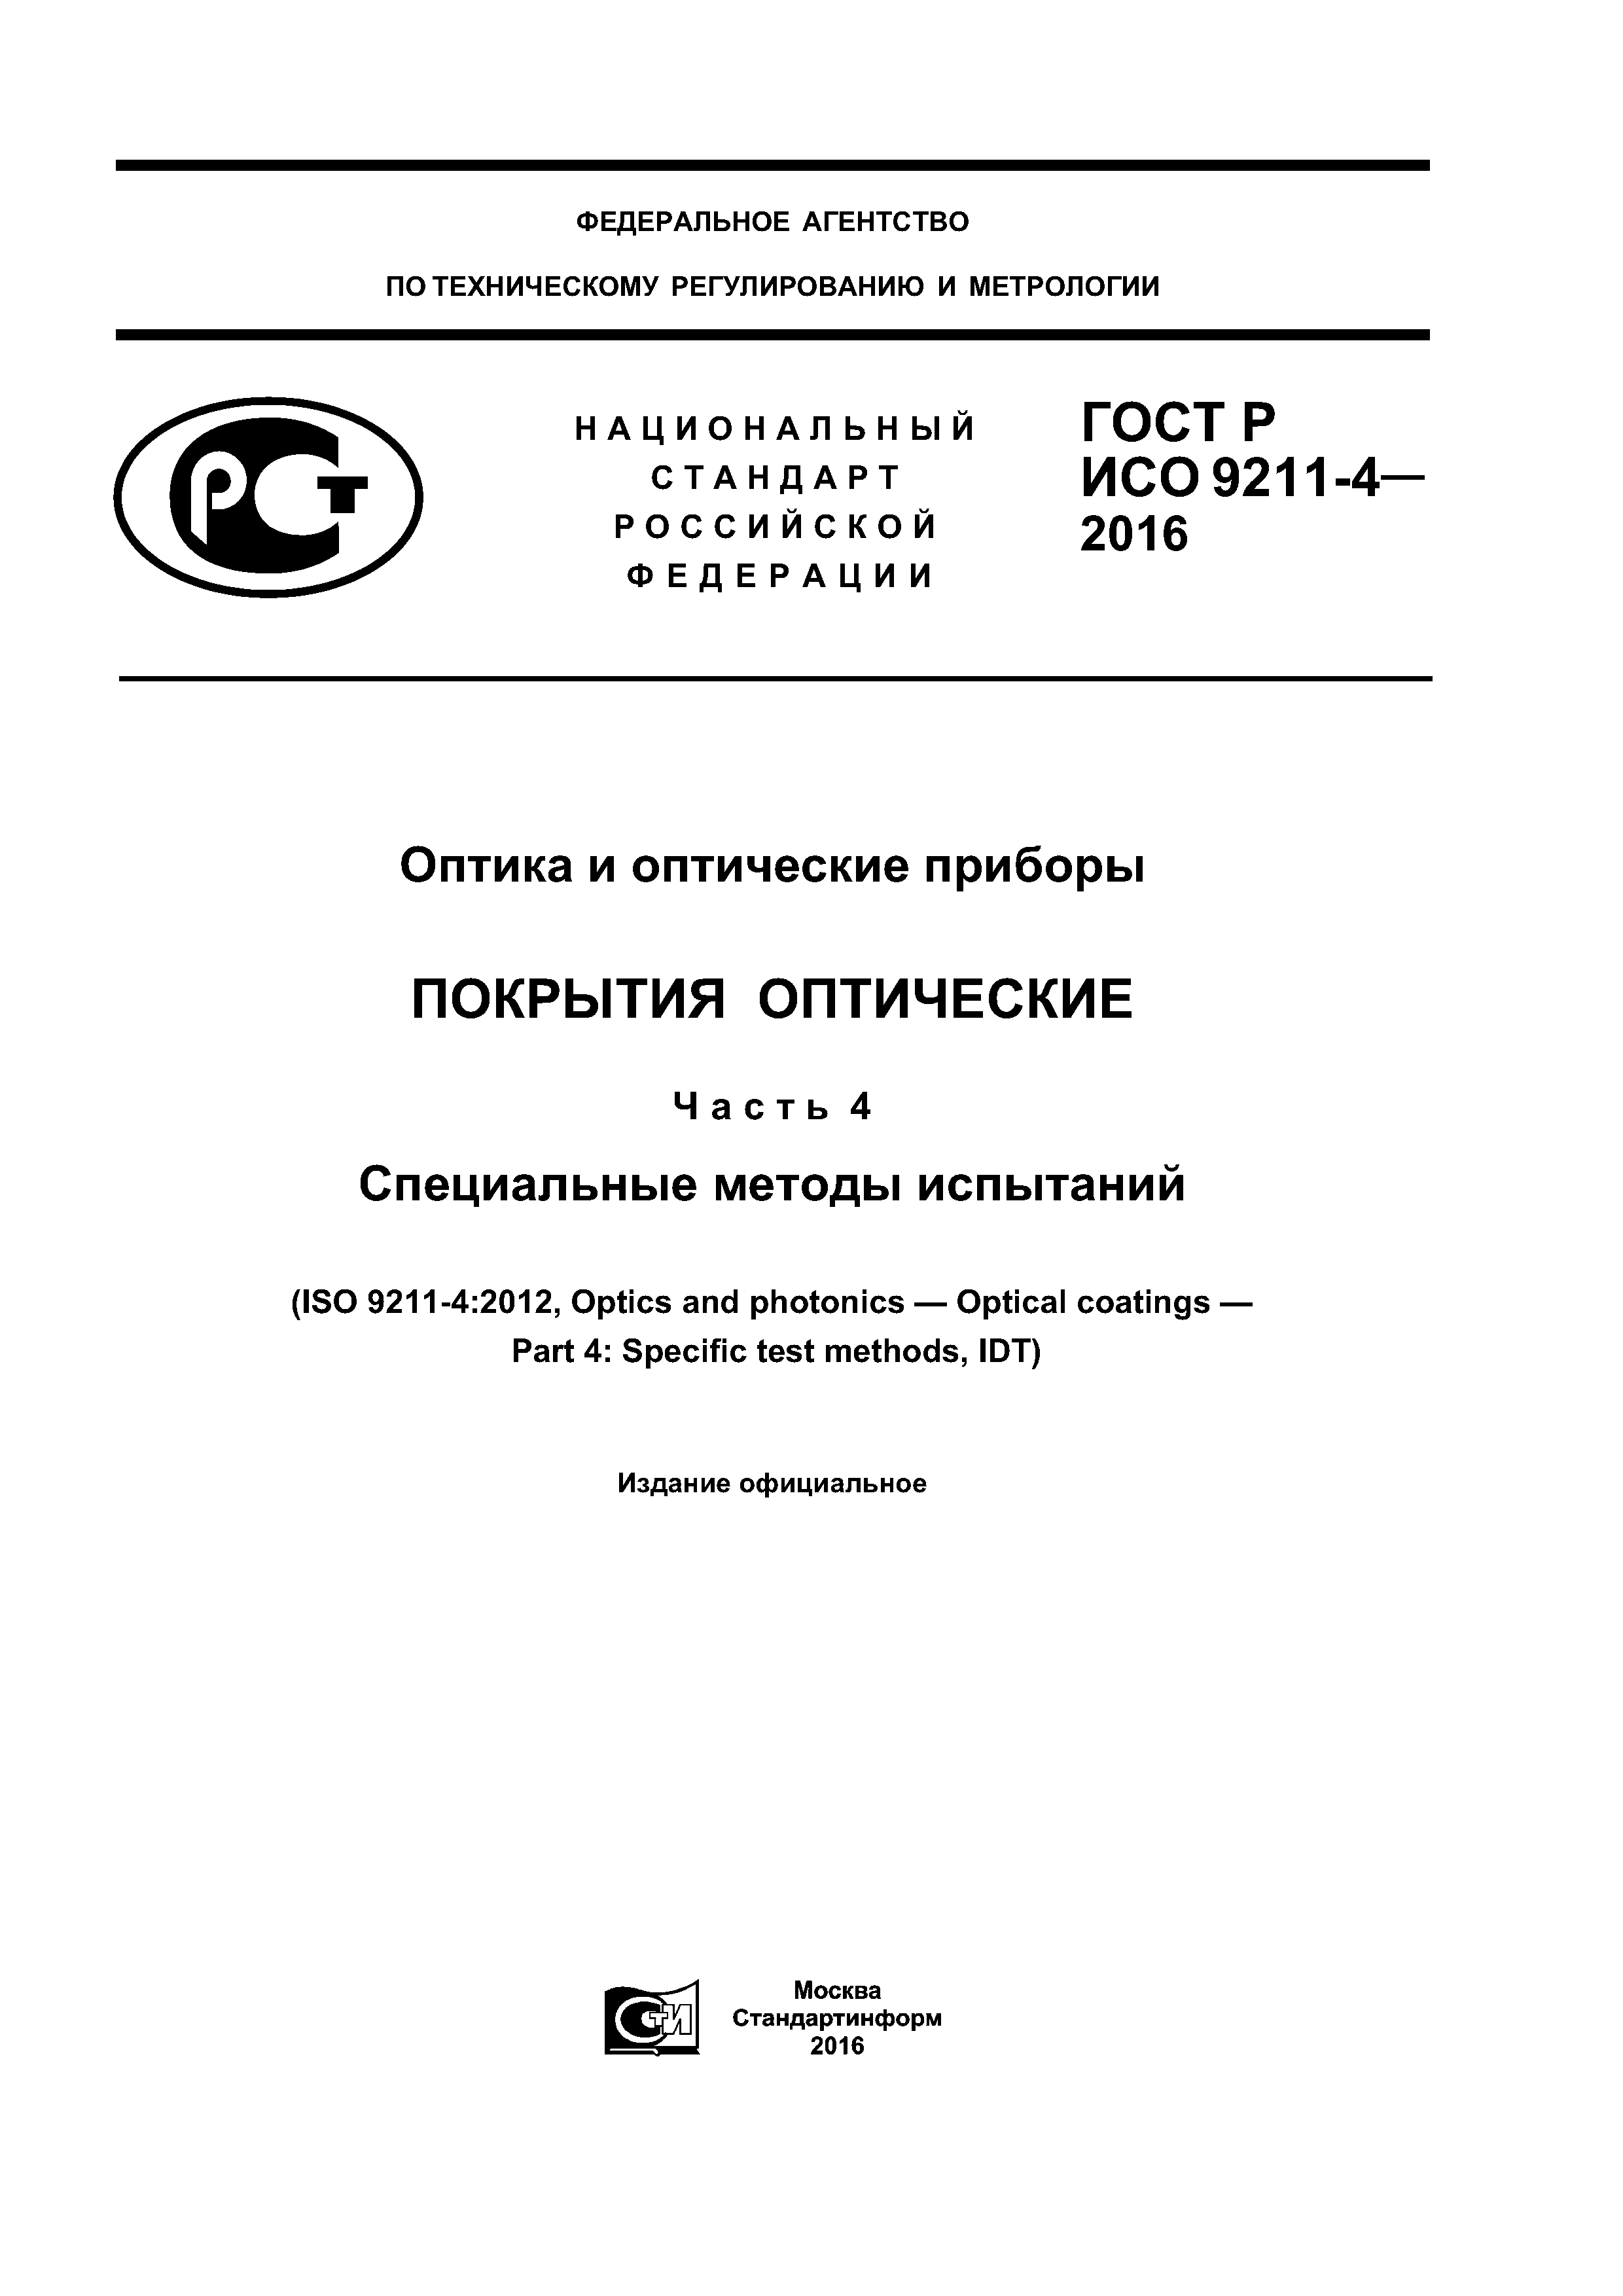 ГОСТ Р ИСО 9211-4-2016